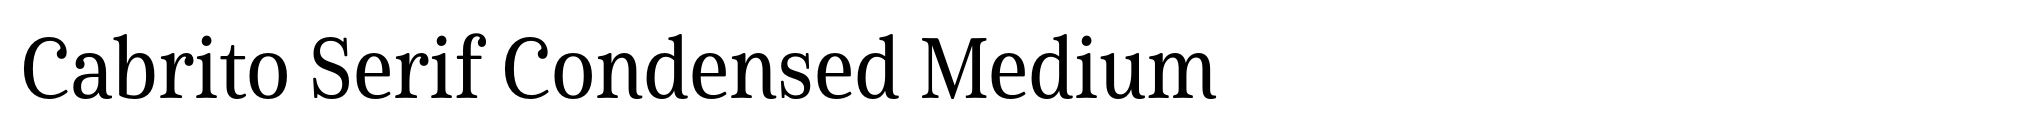 Cabrito Serif Condensed Medium image